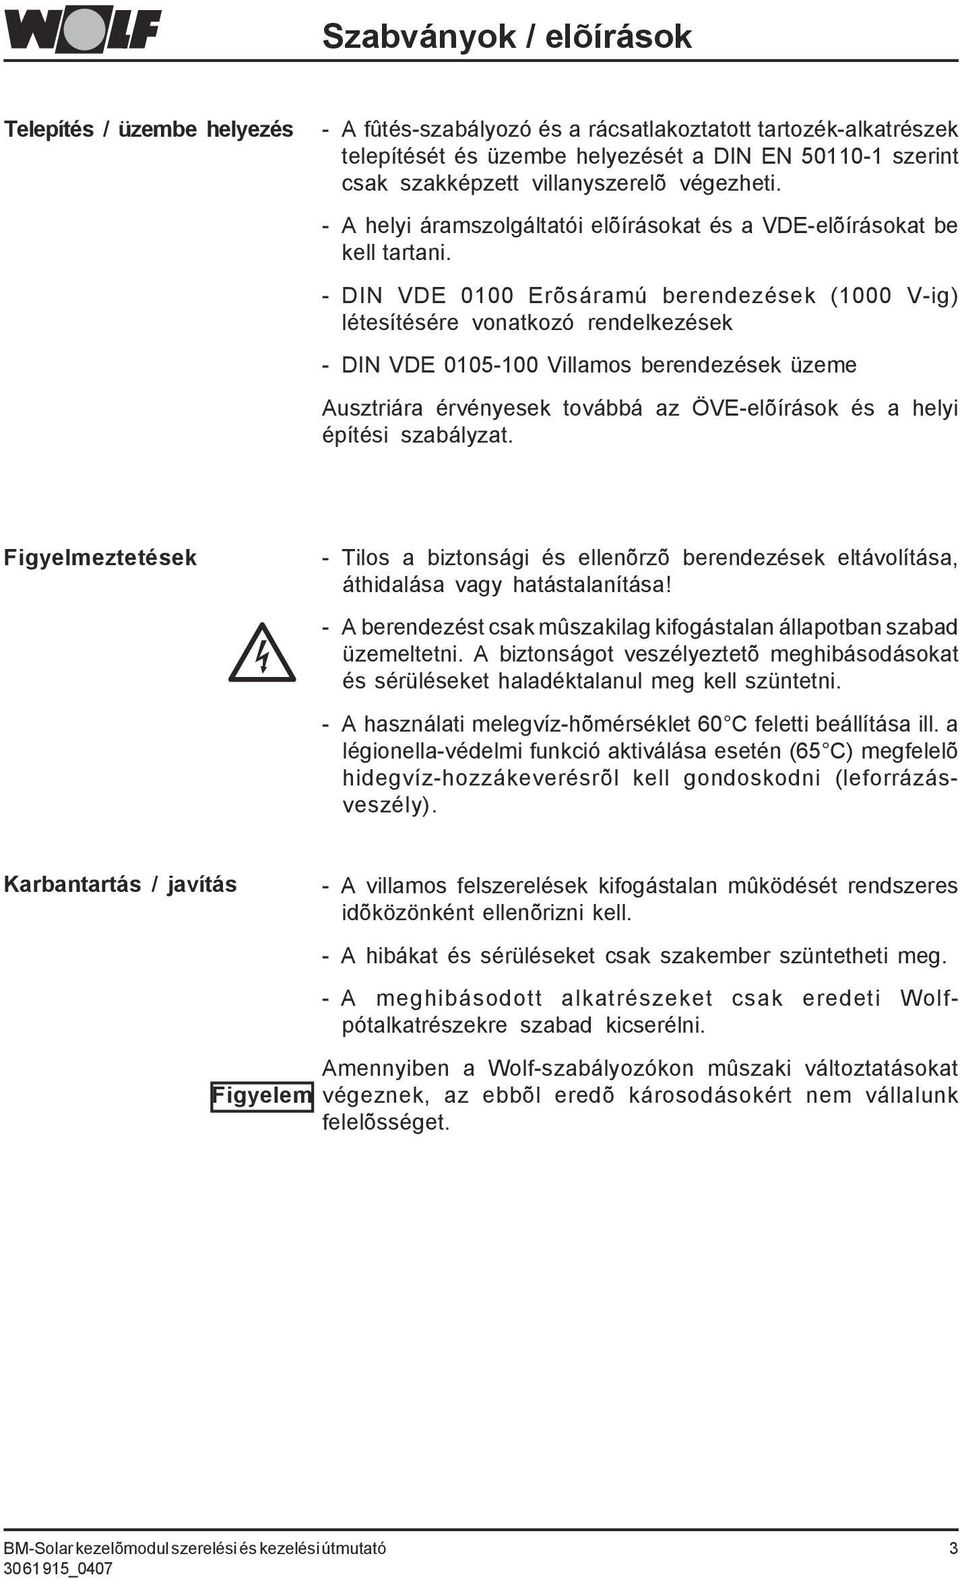 - DIN VDE 0100 Erõsáramú berendezések (1000 V-ig) létesítésére vonatkozó rendelkezések - DIN VDE 0105-100 Villamos berendezések üzeme Ausztriára érvényesek továbbá az ÖVE-elõírások és a helyi építési